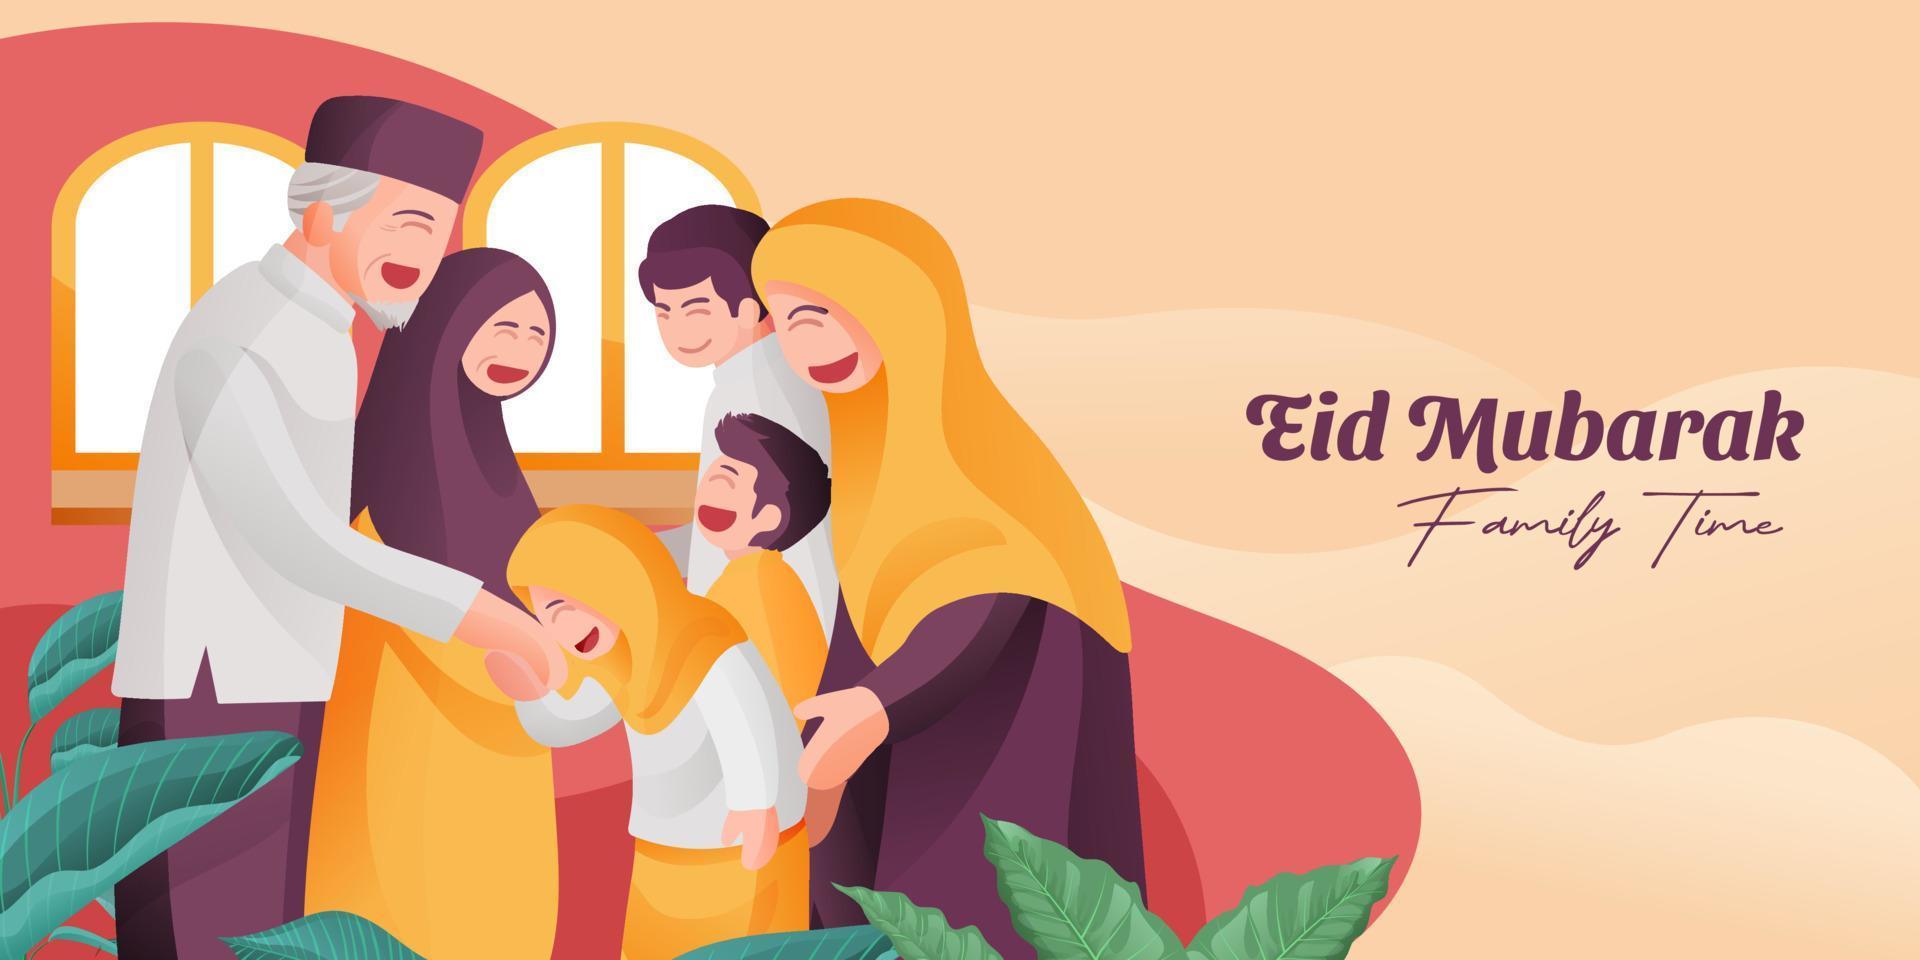 eid Mubarak familia reunión ilustración con musulmán mayor padres y niños juntos sonrisa lleno de felicidad vector